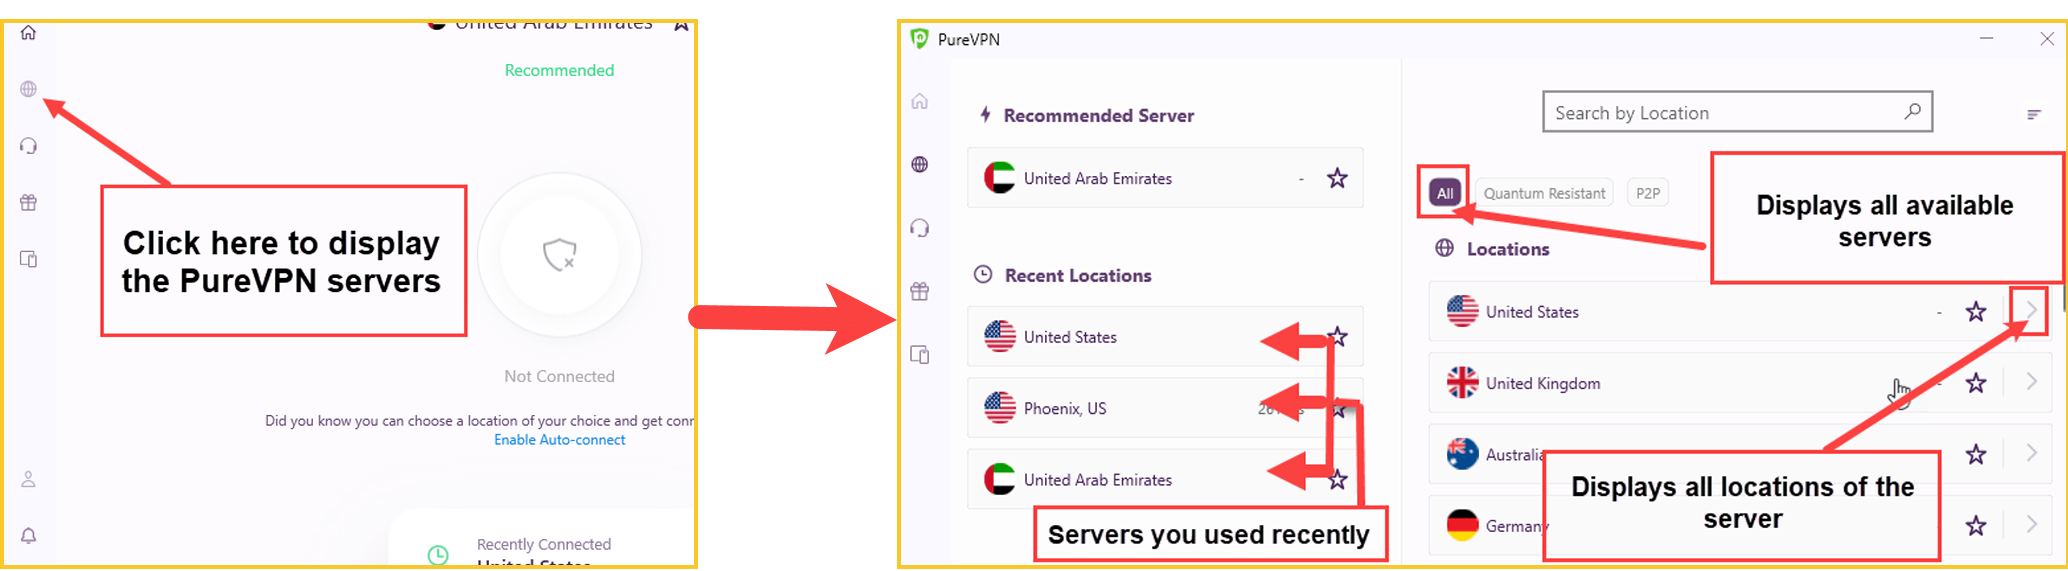 purevpn-server-locations-interface-in-UAE